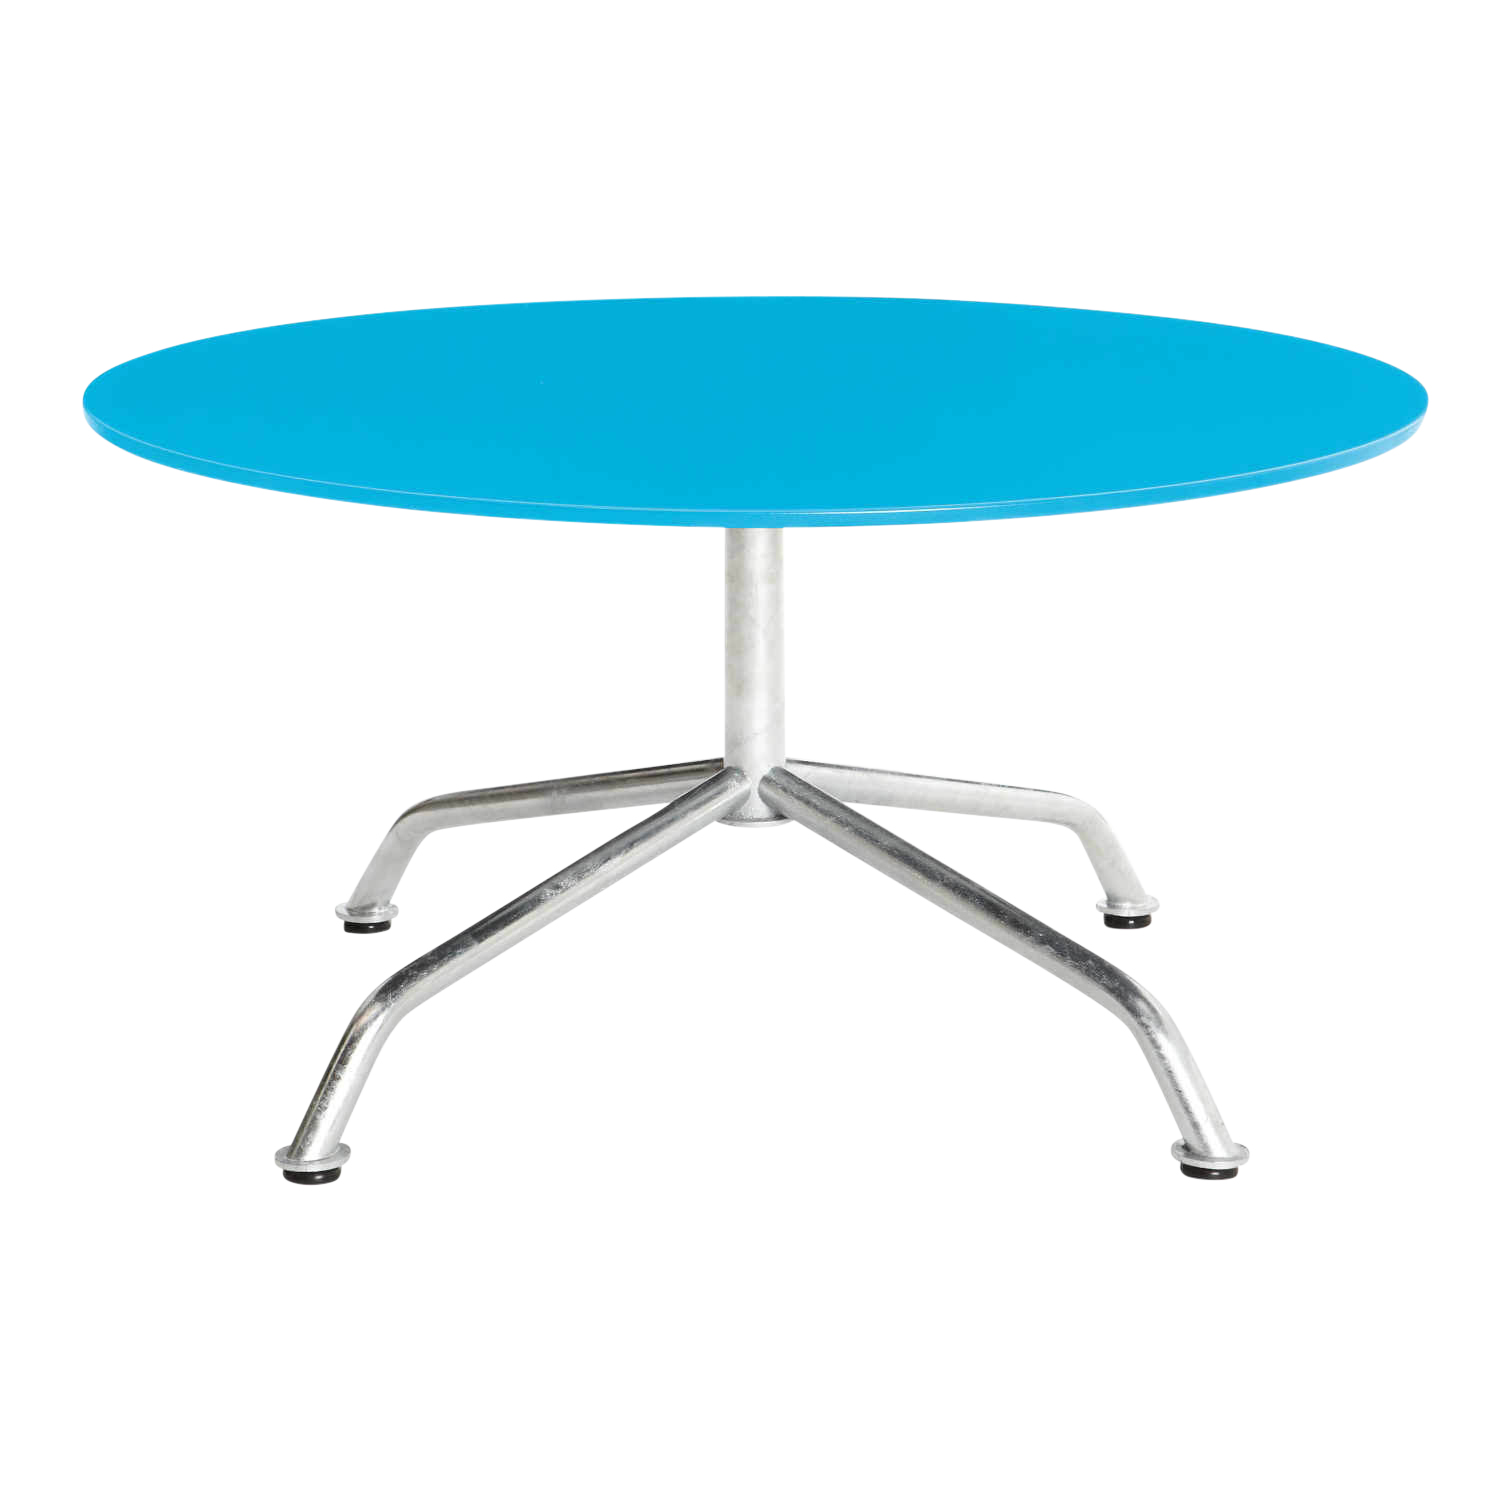 Haefeli Gartenloungetisch , Farbe hellblau ncs s1060b, Grösse ø 80 cm von Embru